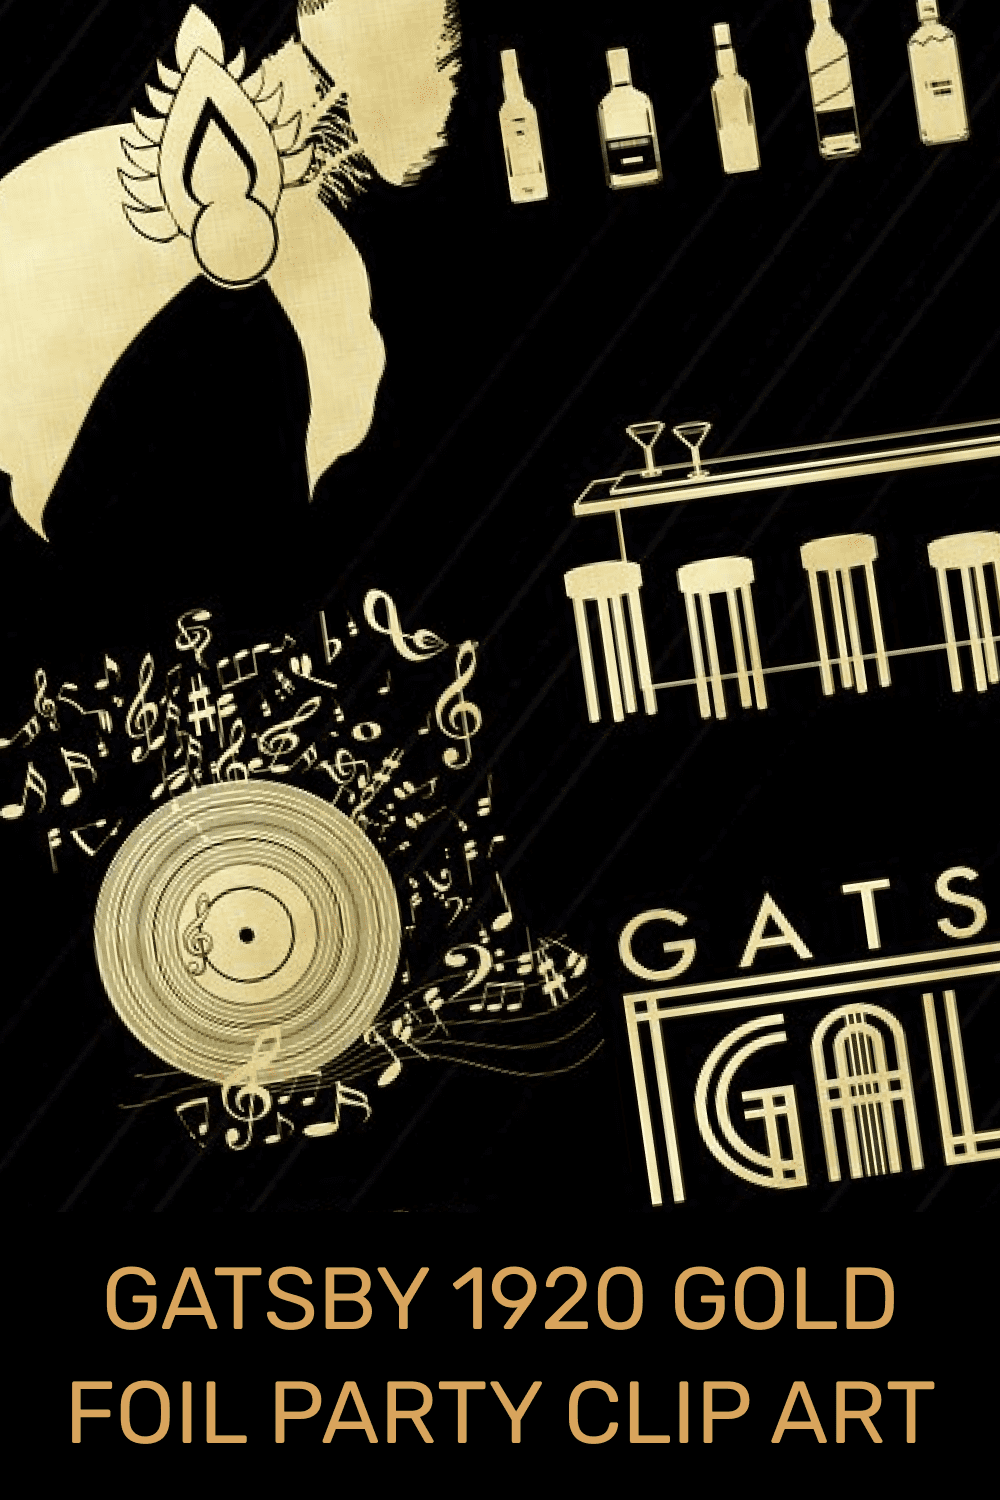 gatsby 1920 gold foil party clip art pinterest image.